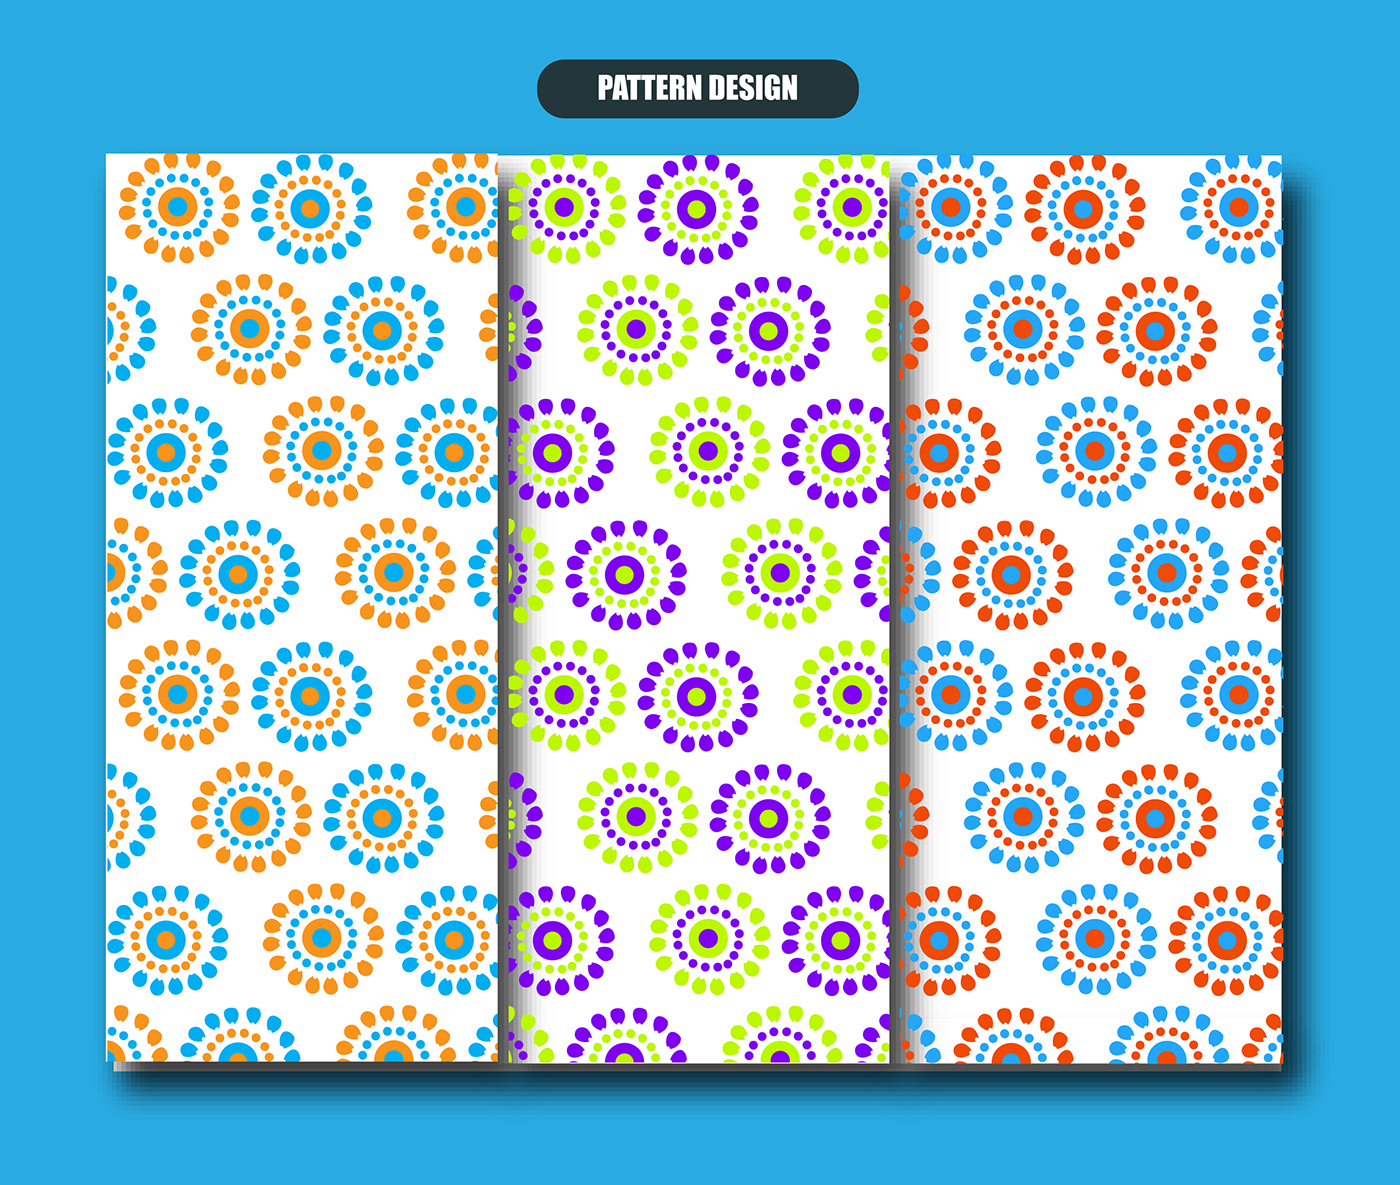 pattern design  pattern designer pattern designs Patterns pattern pattern making bed sheet arshibbir Bed Sheet design pattern designing